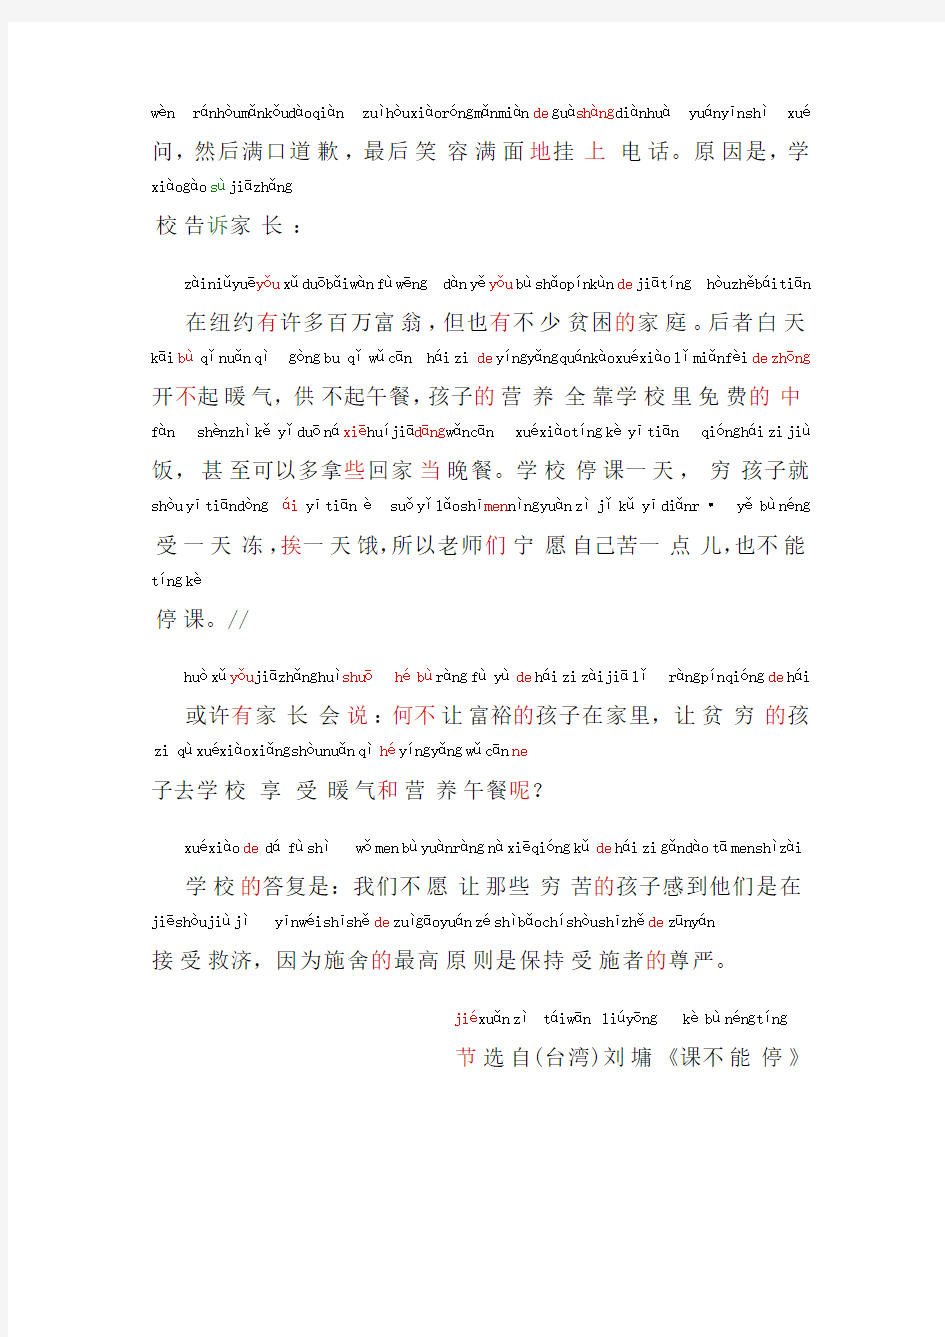 普通话考试资料23普通话朗读作品《课不能停》文字加拼音